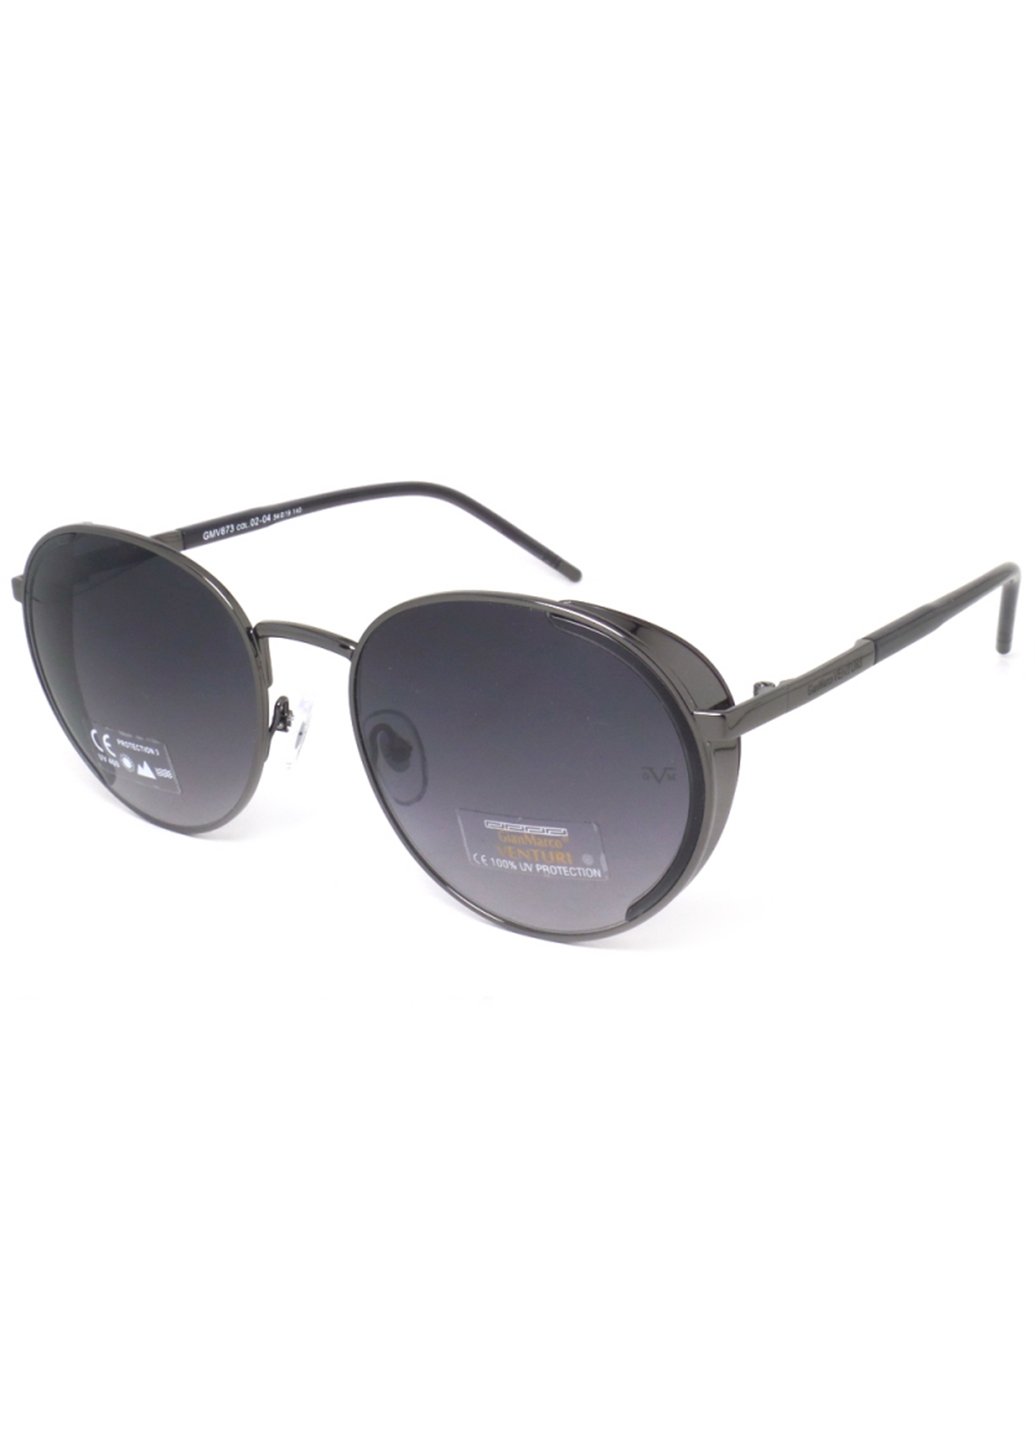 Купить Женские солнцезащитные очки Gian Marco VENTURI GMV873 130016 - Черный в интернет-магазине